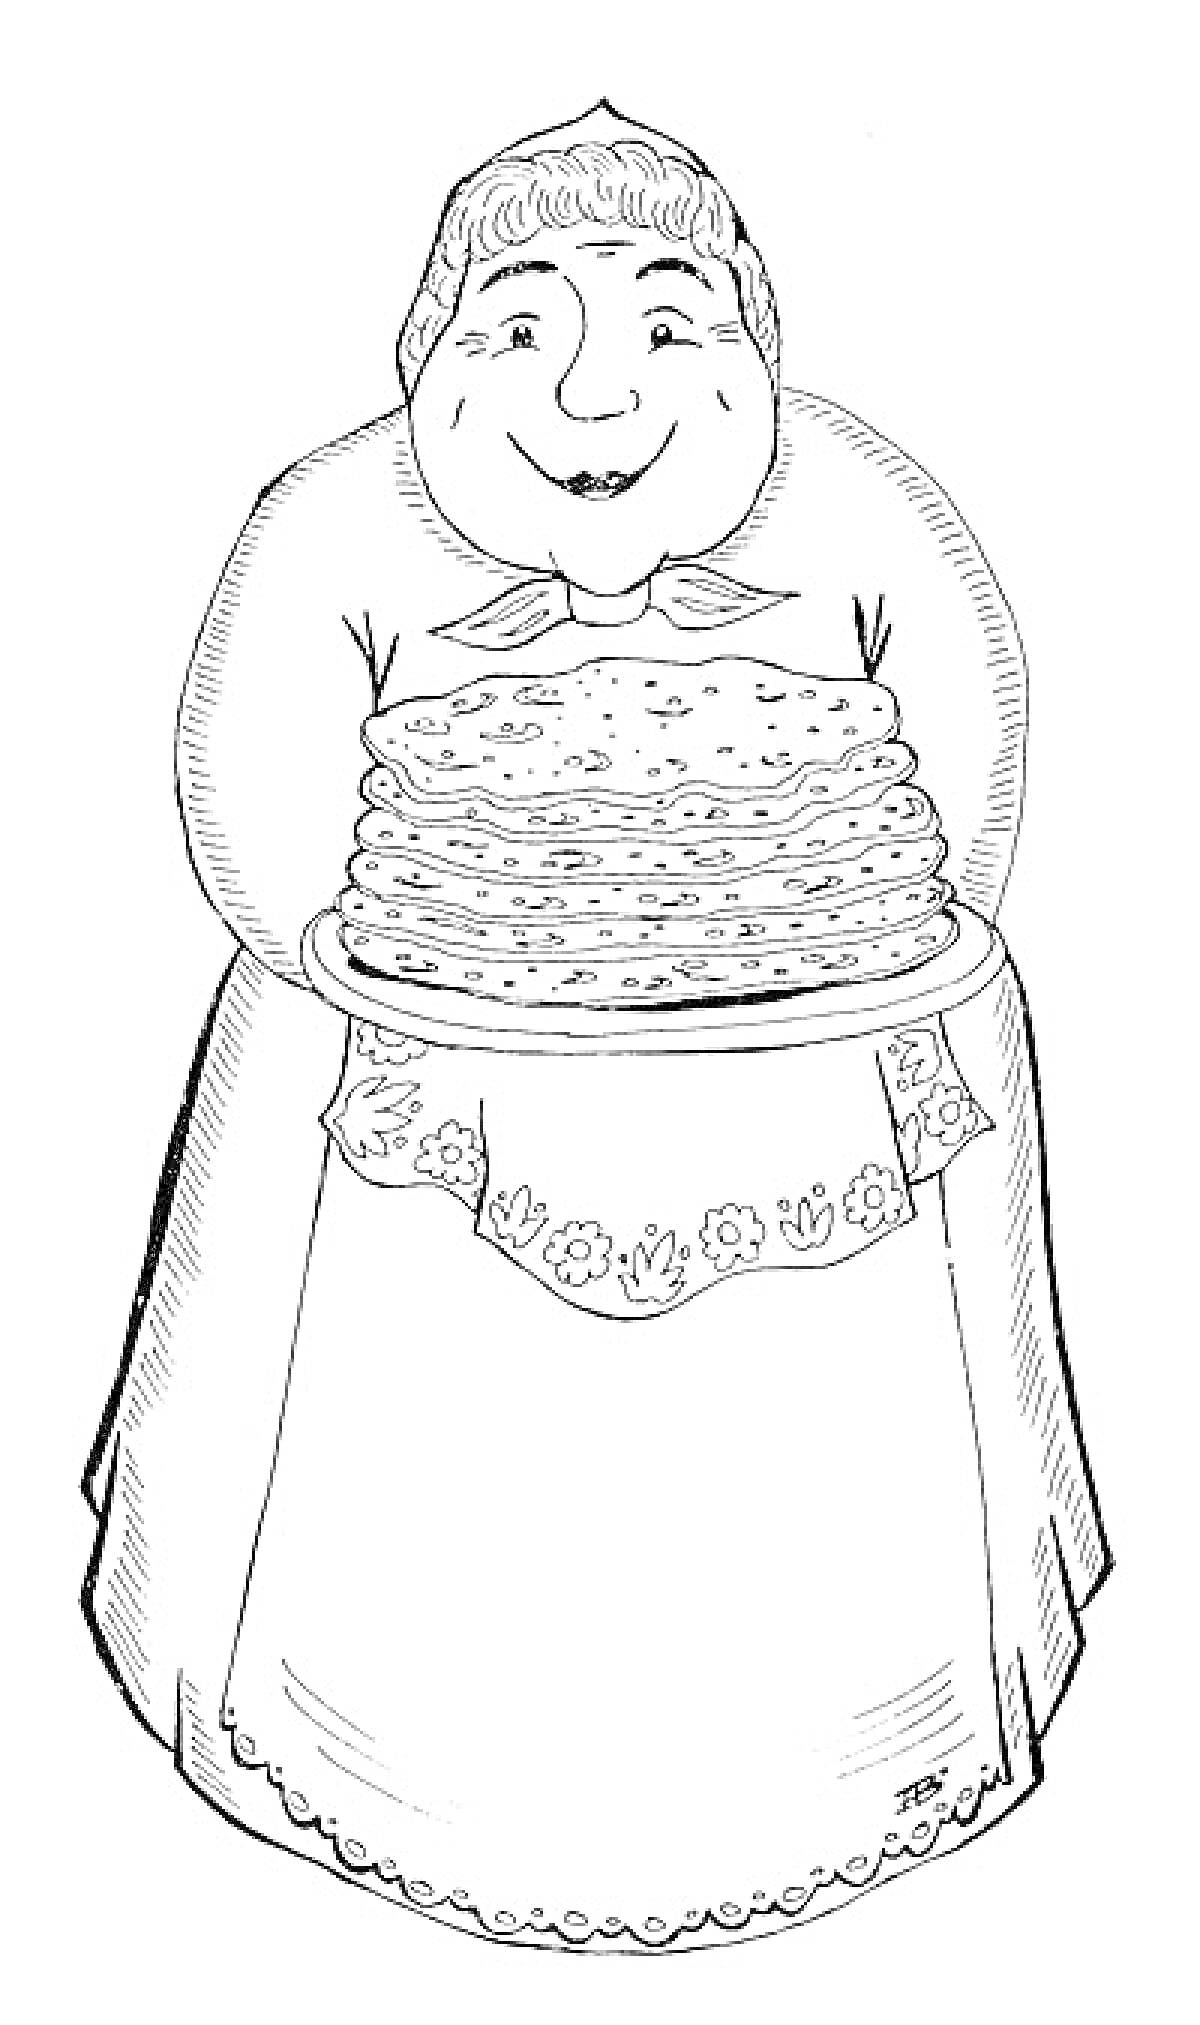 Бабушка с блинами на тарелке